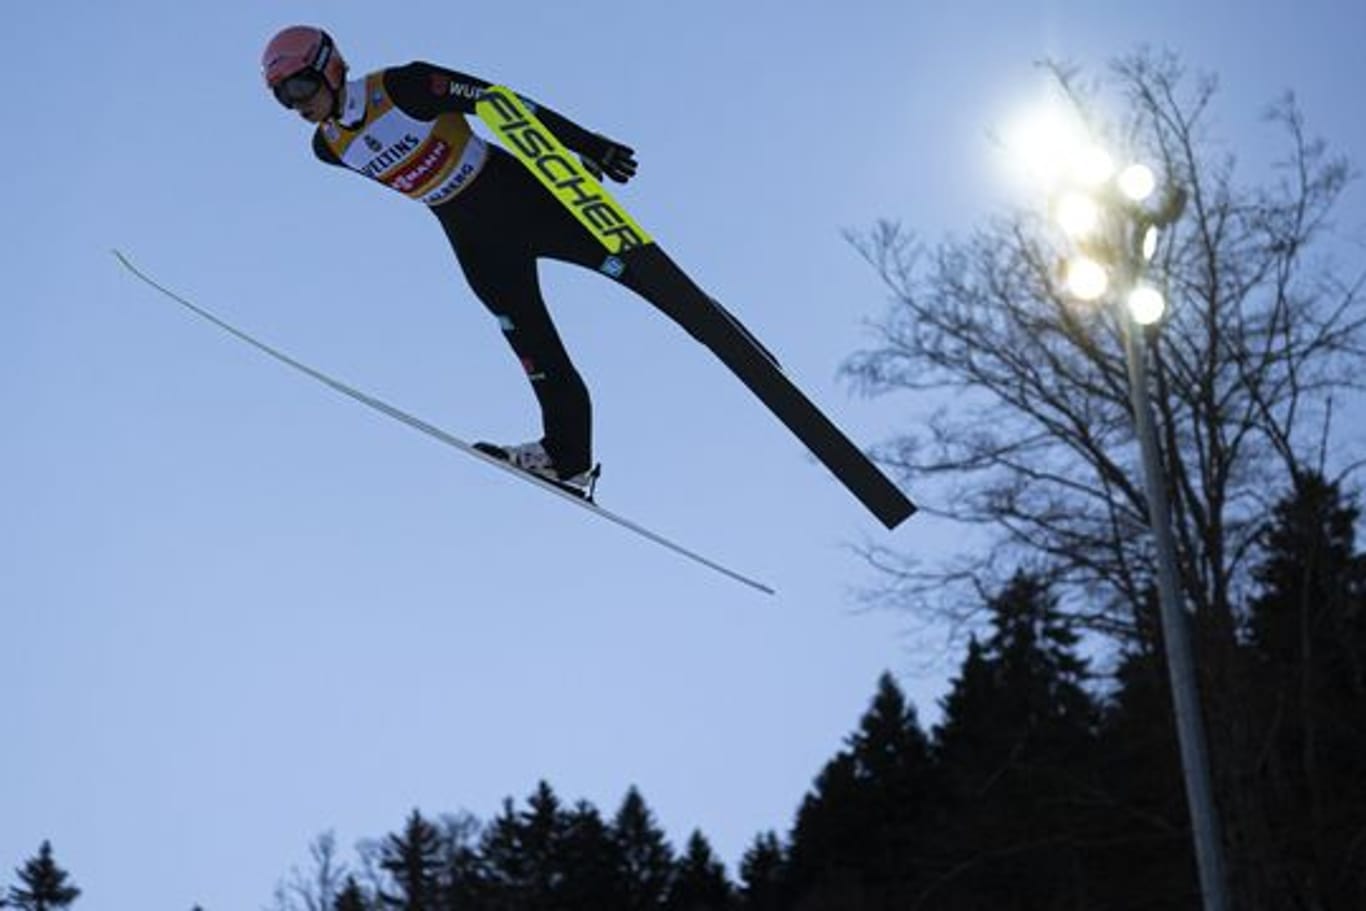 Der Gesamtweltcupführende kam beim Weltcup in Engelberg auf Weiten von 135 und 131,5 Meter und damit auf den zweiten Platz.